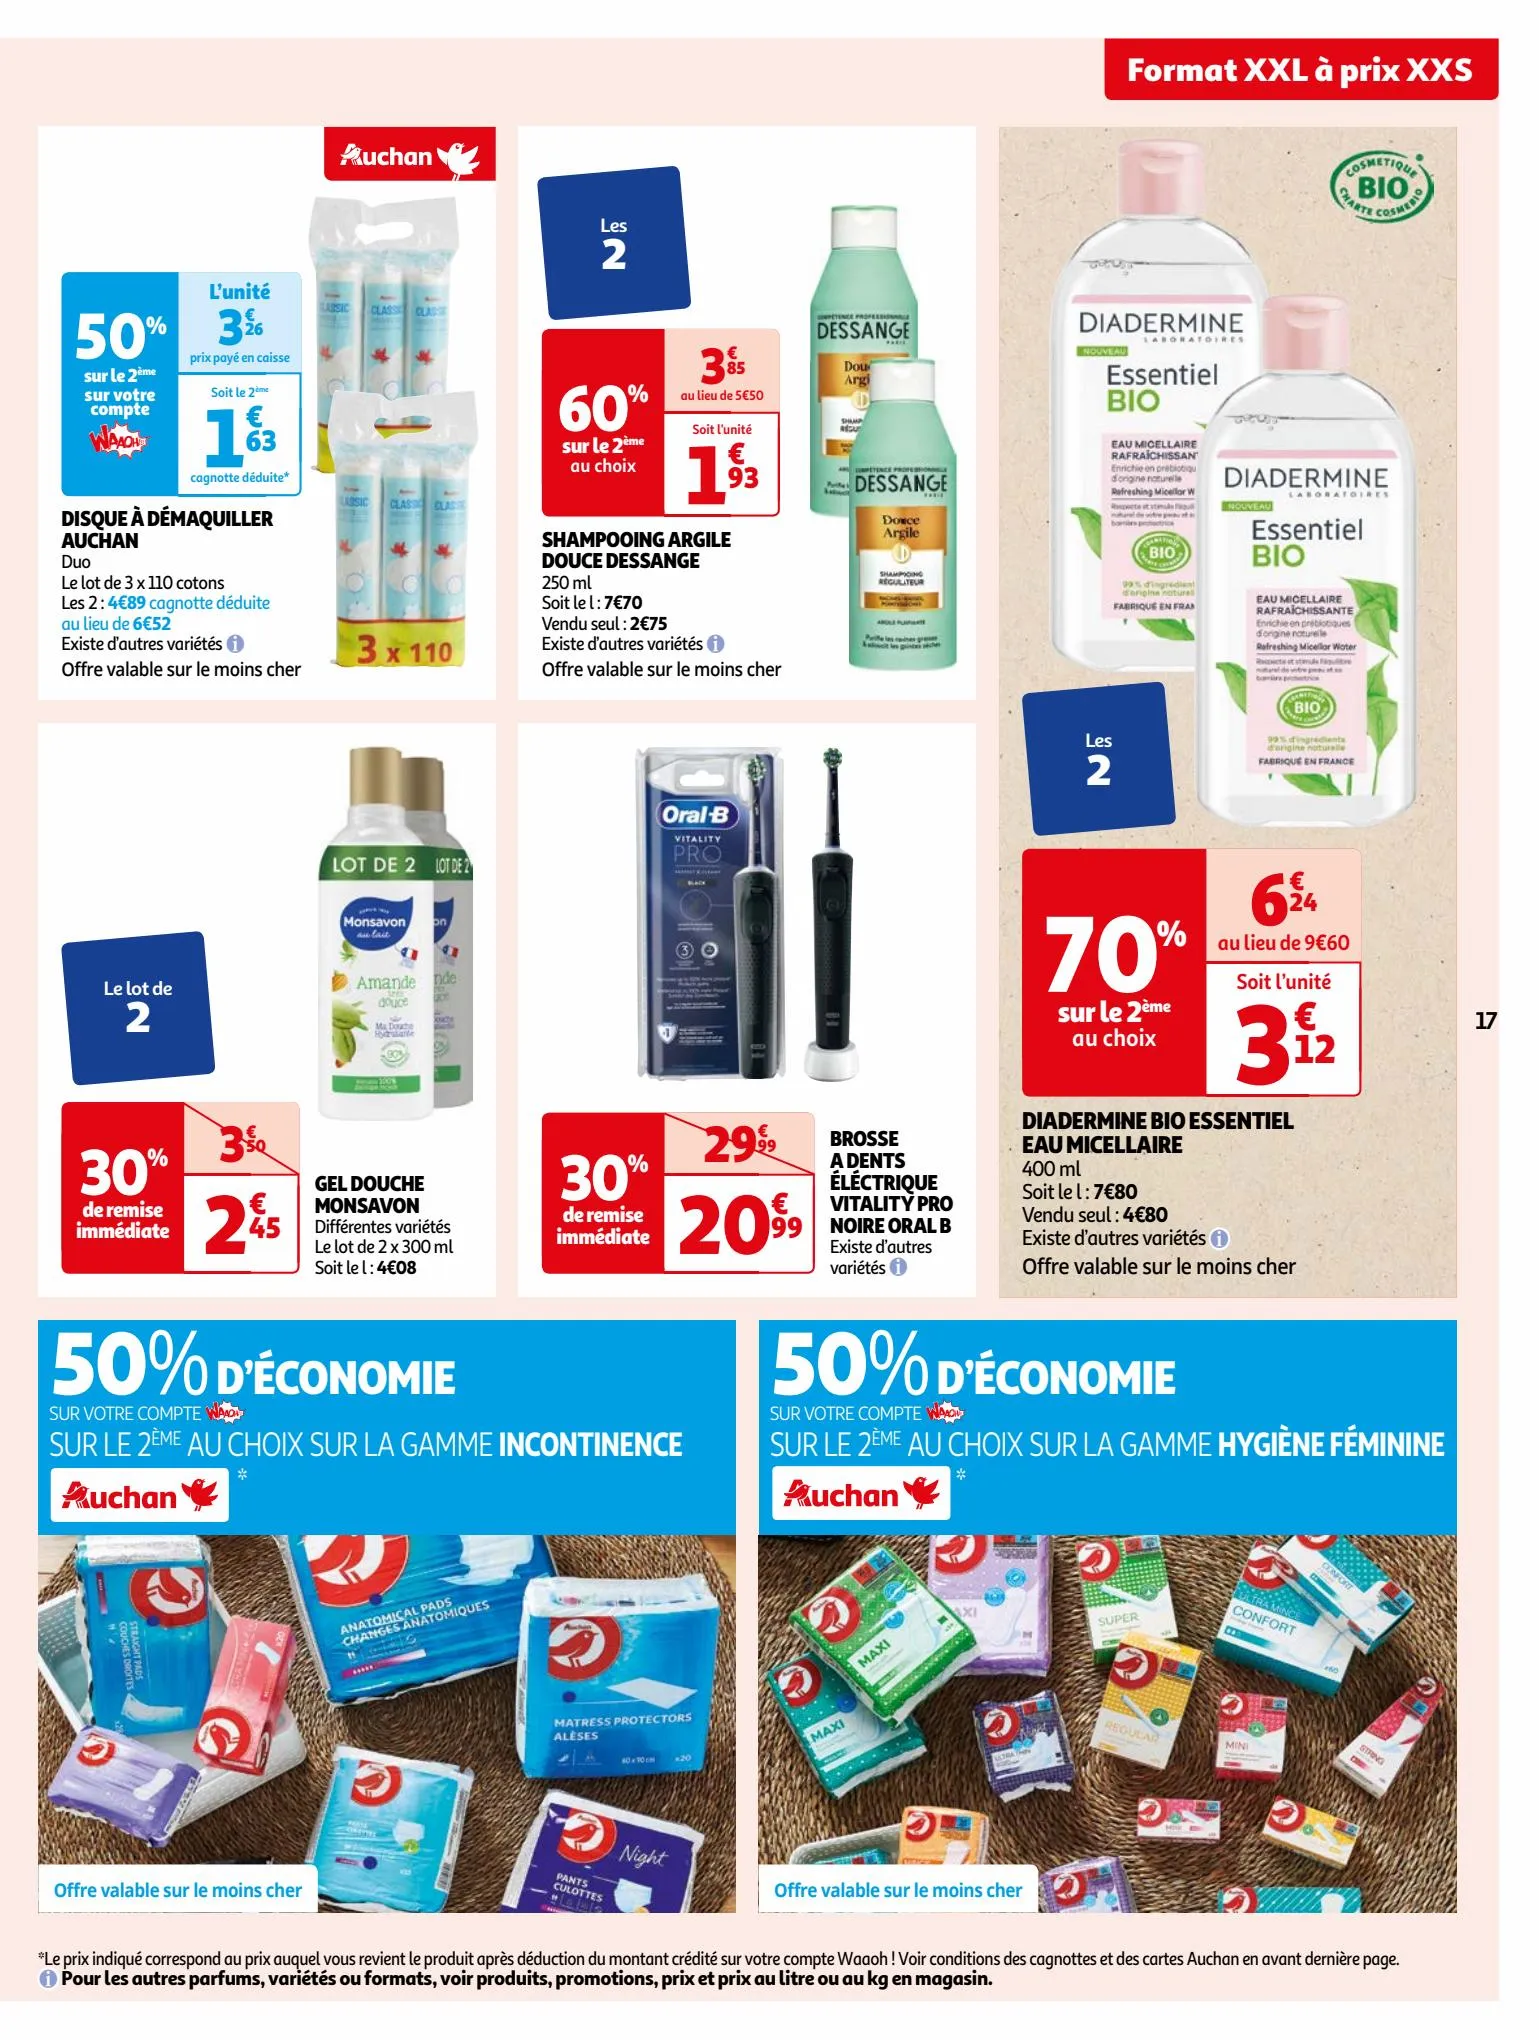 Catalogue Format XXL à prix XXS dans votre supermarché, page 00017